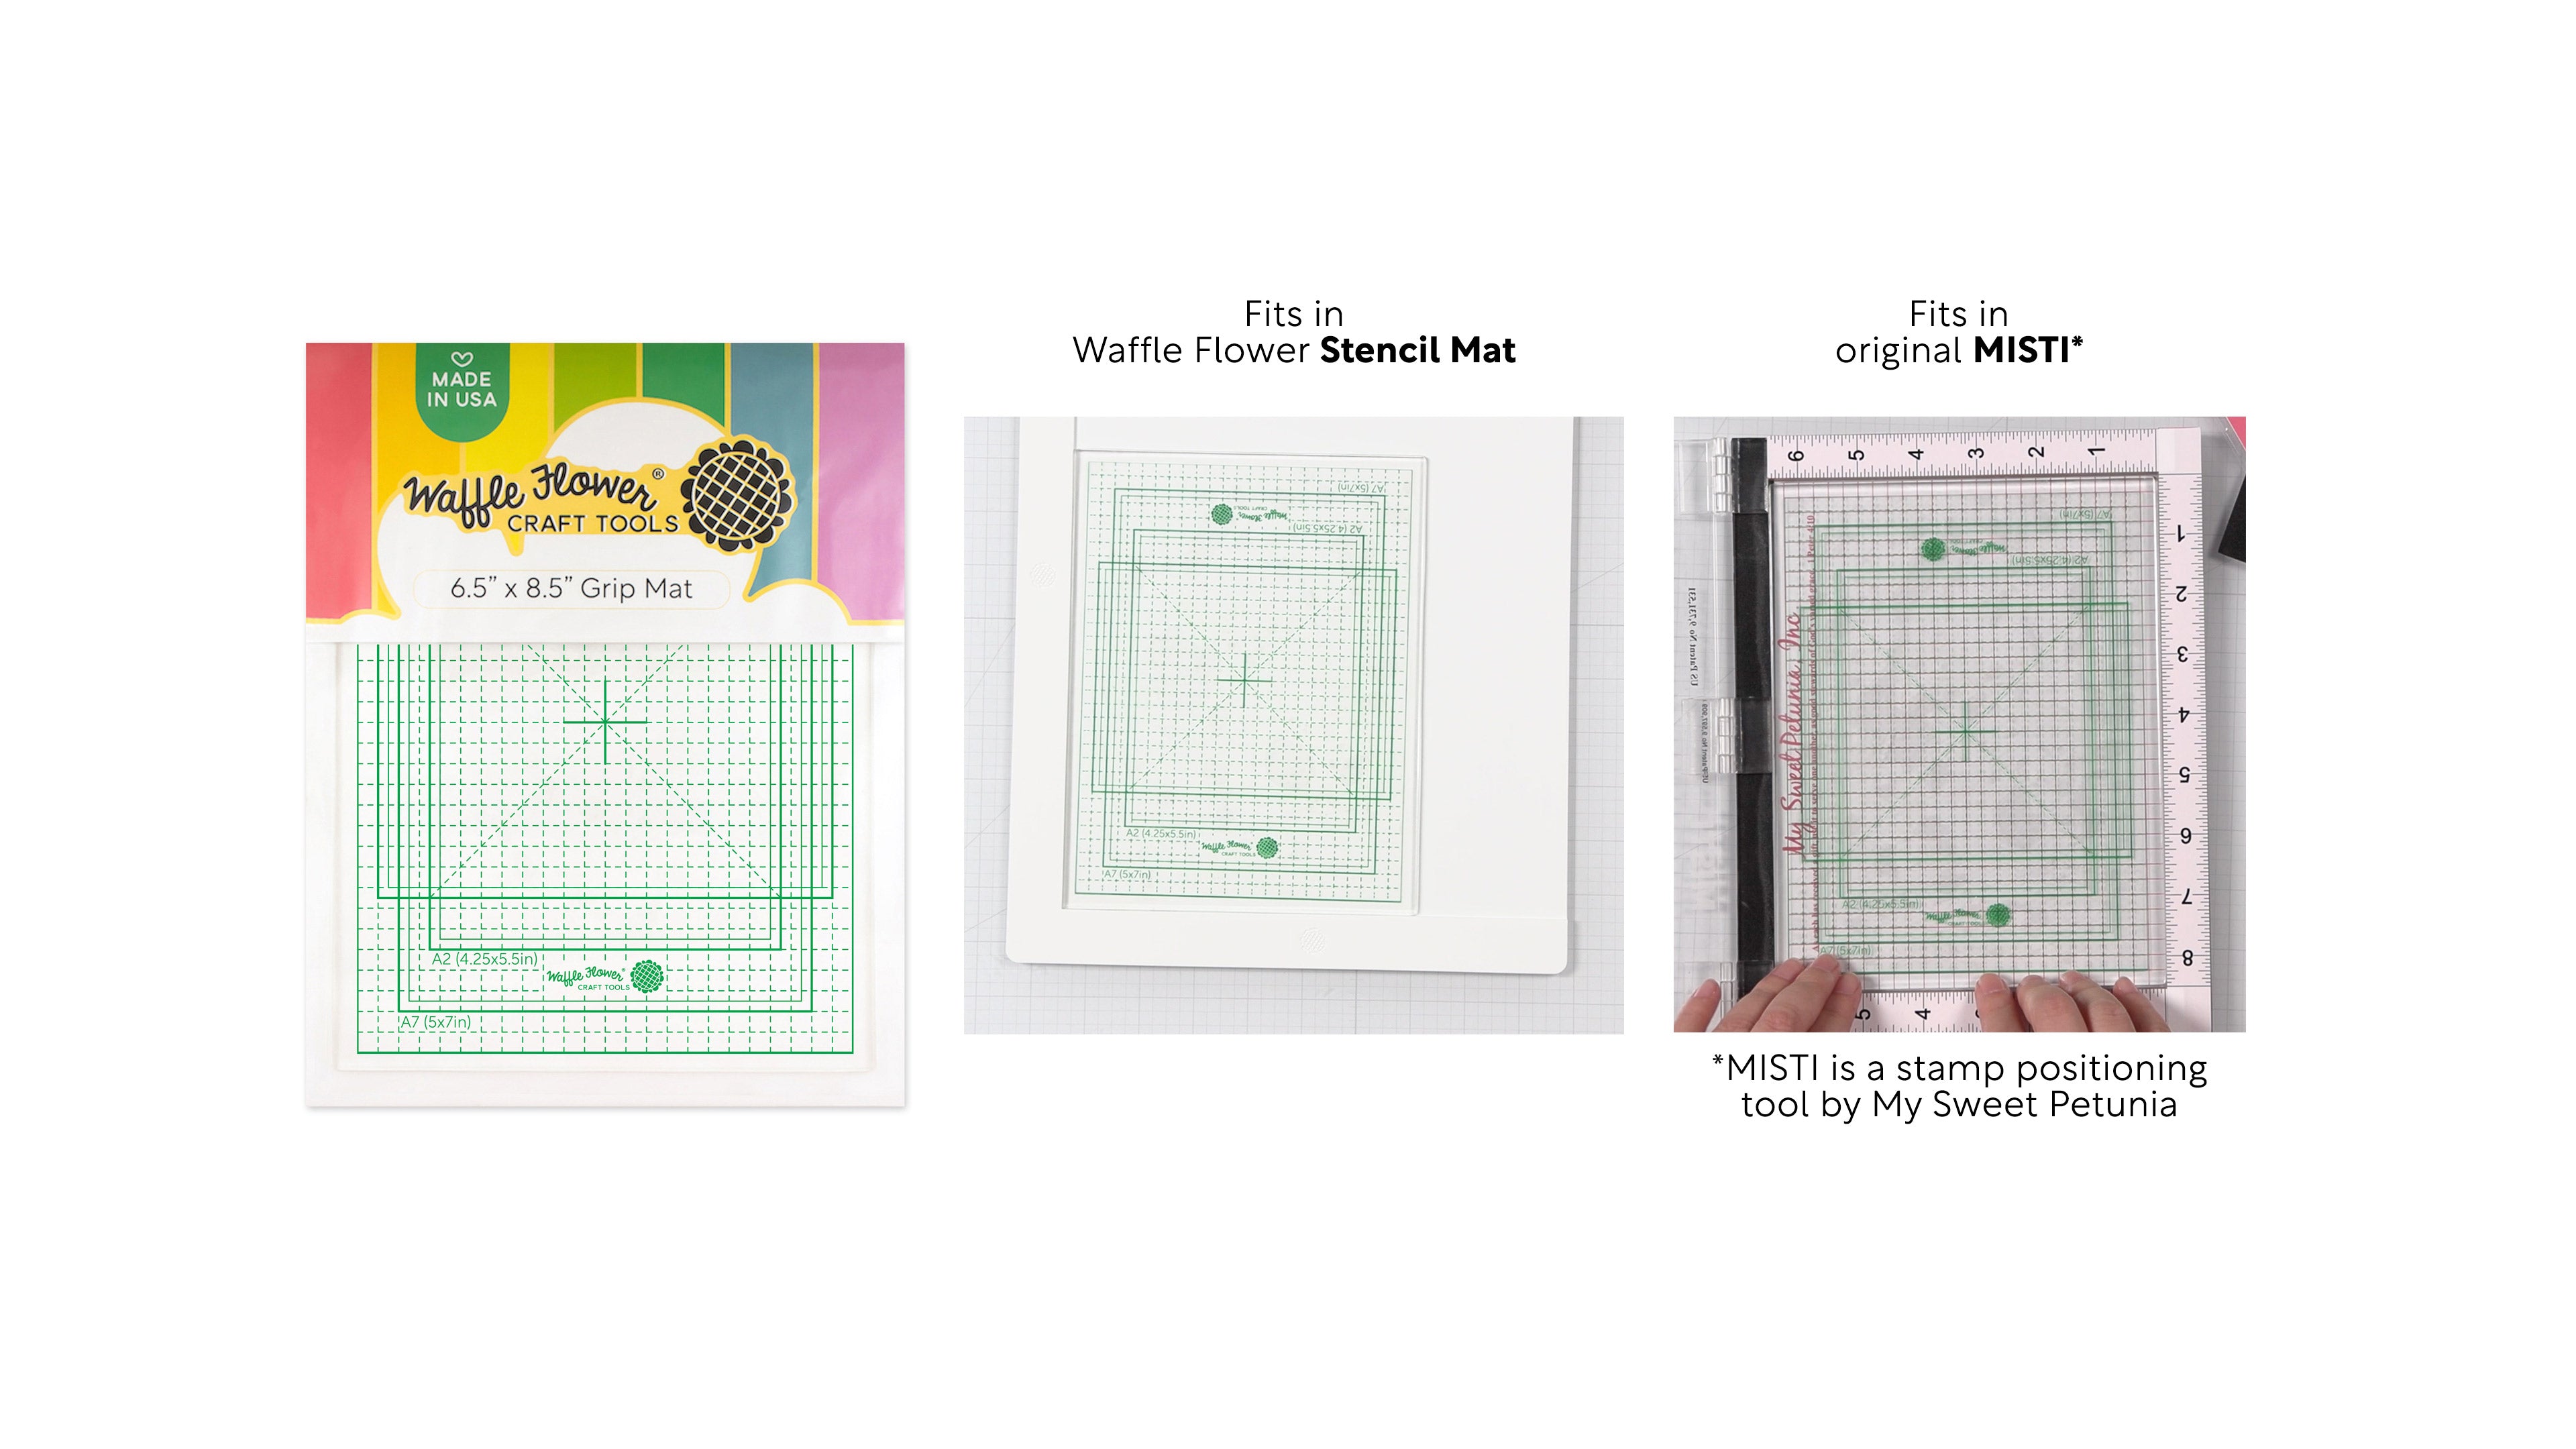 Waffle Flower - 8.5x8.5 Grip Mat – Fancy Paper Company